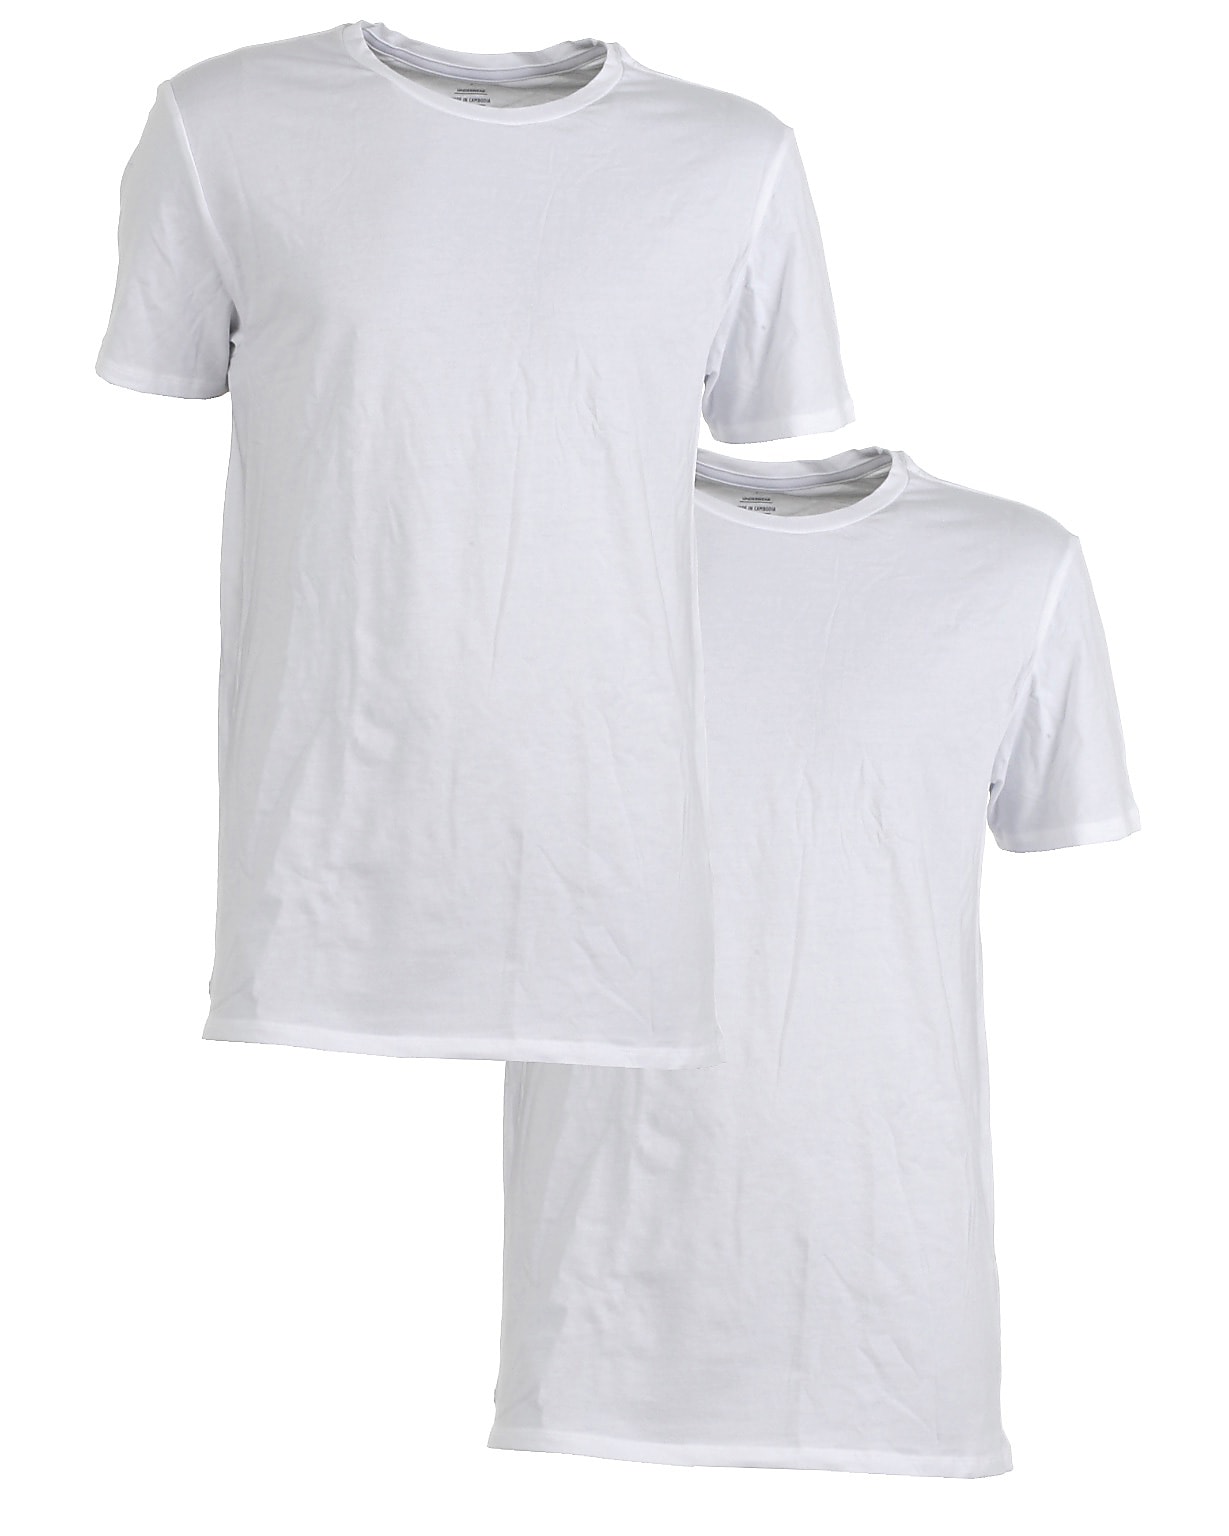 Lacoste 2-pak t-shirt s/s